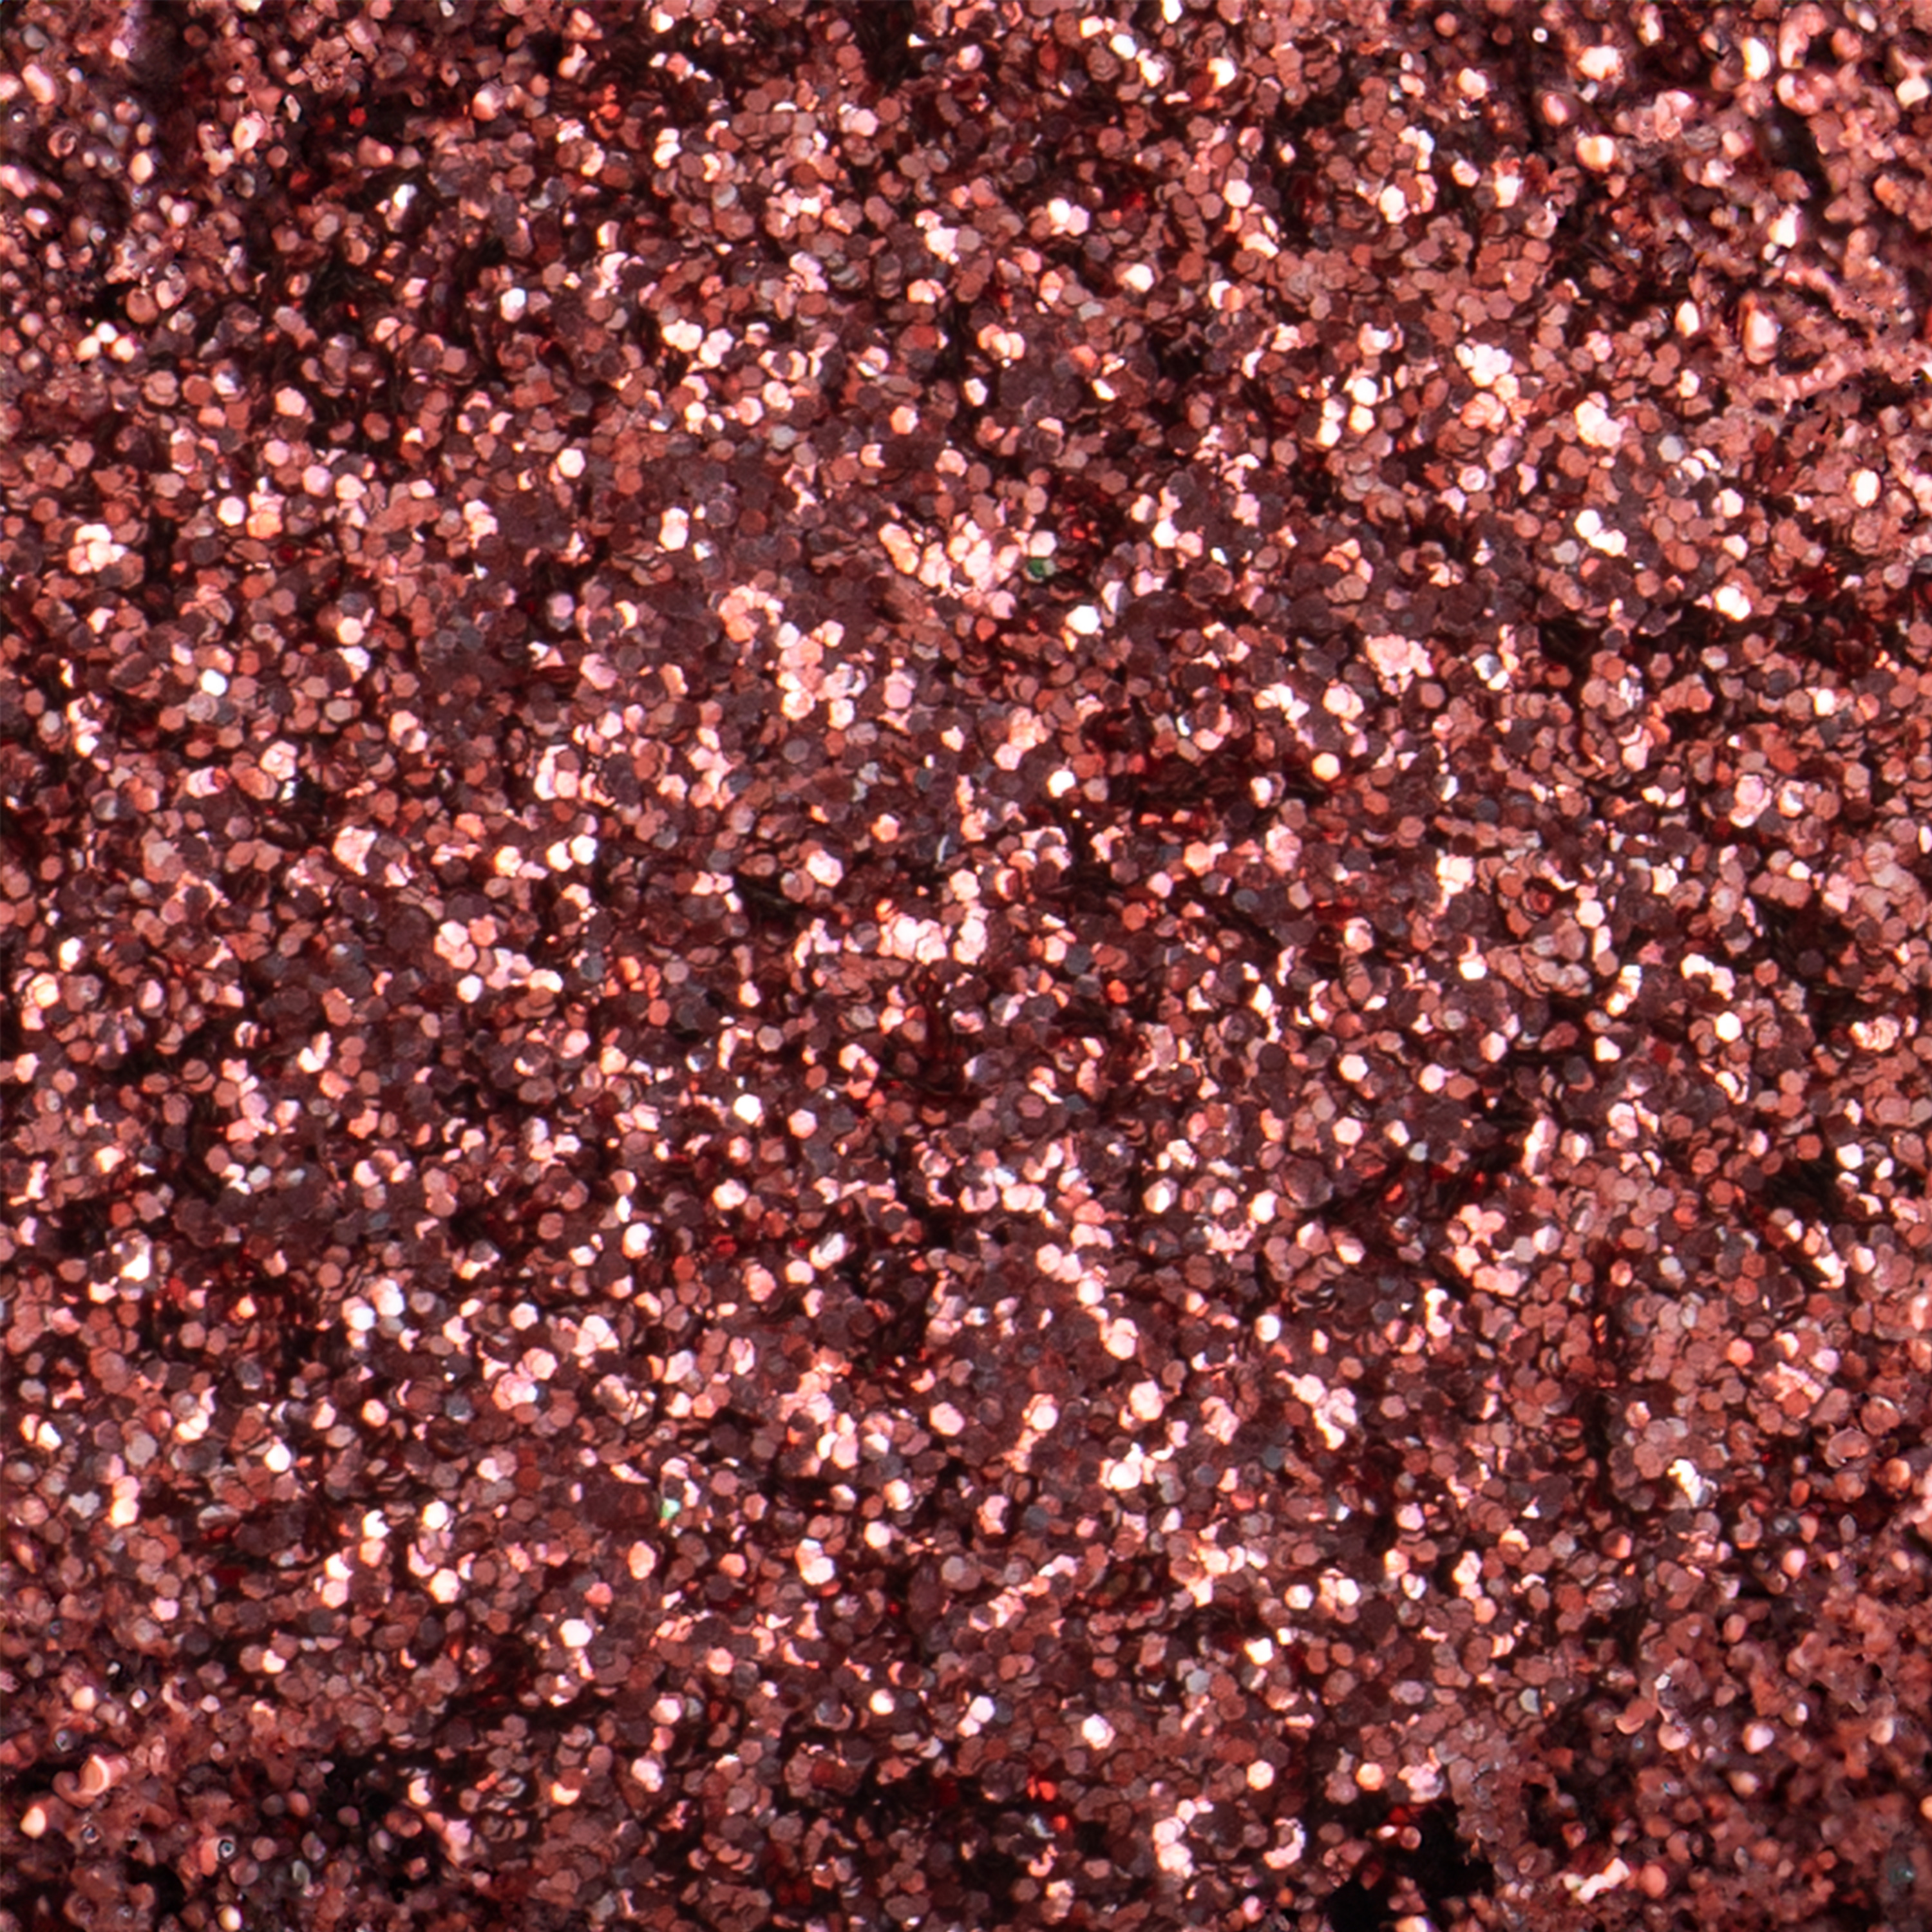 Bio-Glitter 'Premium', 10 g, rosa